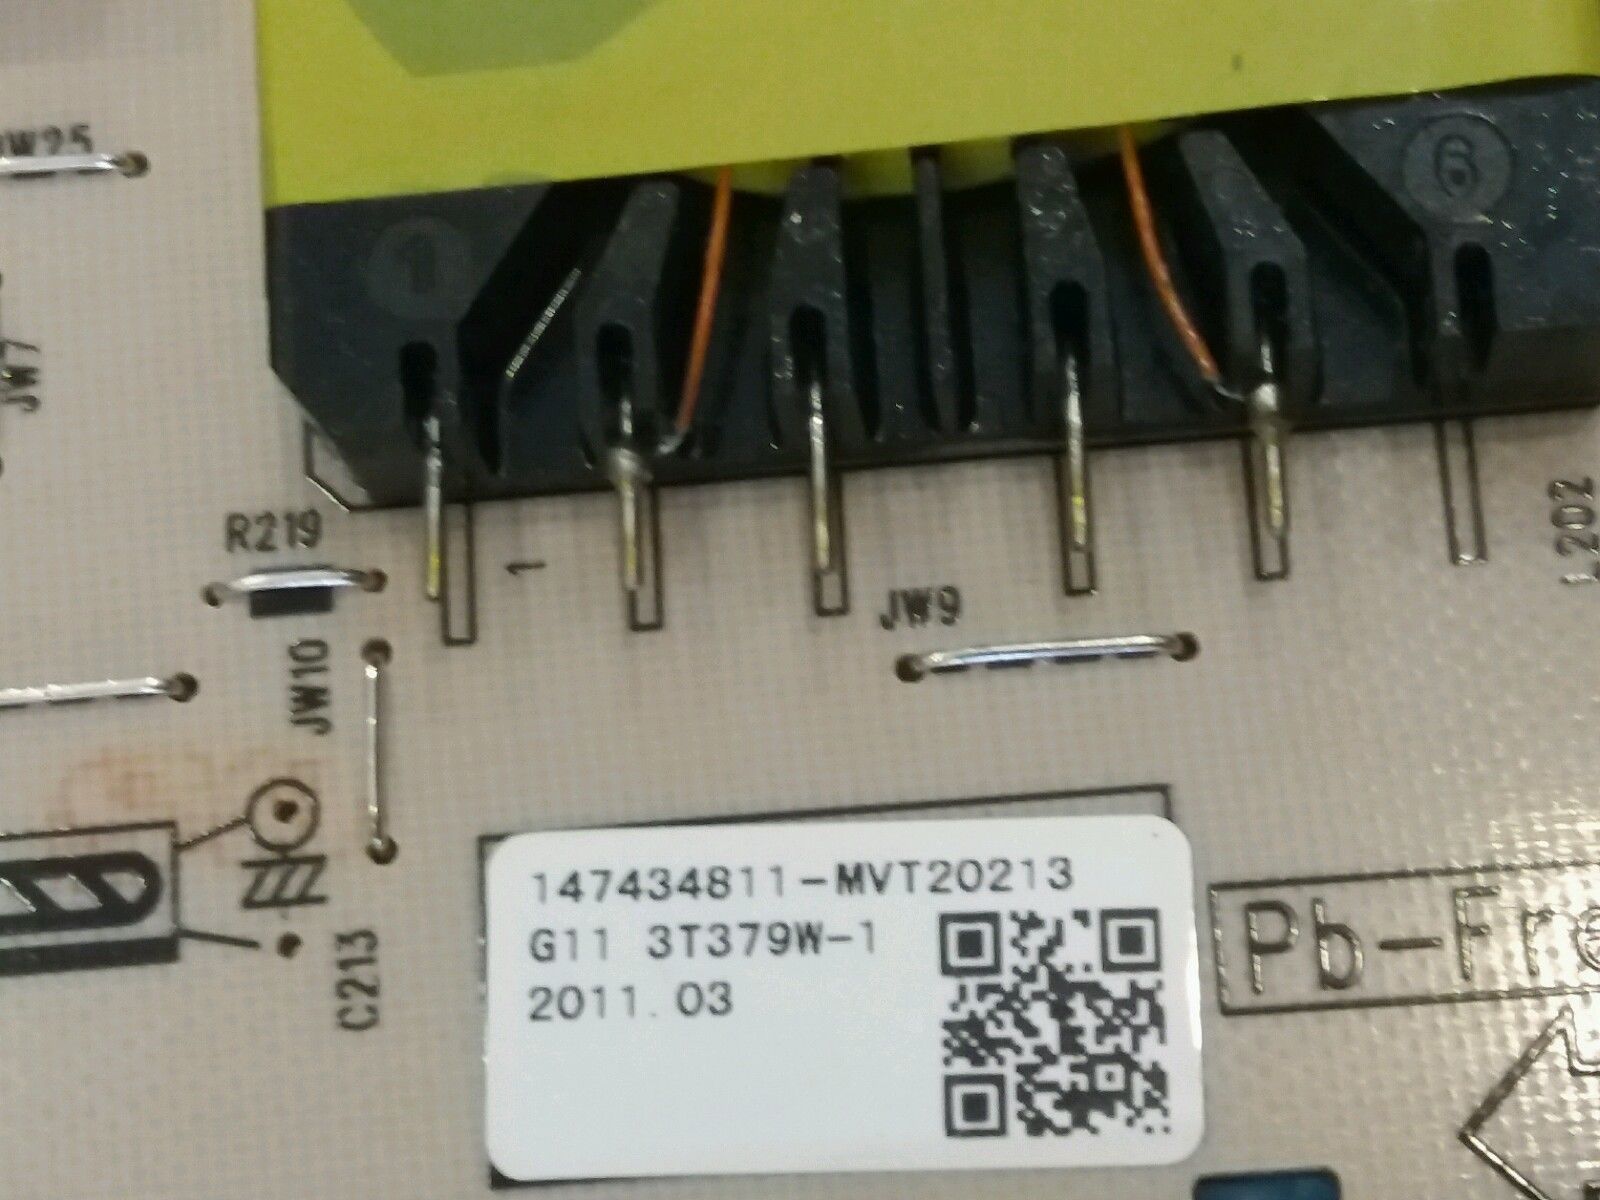 147434811 sony power supply psc10357b 3t379w-1 xbr-65hx929